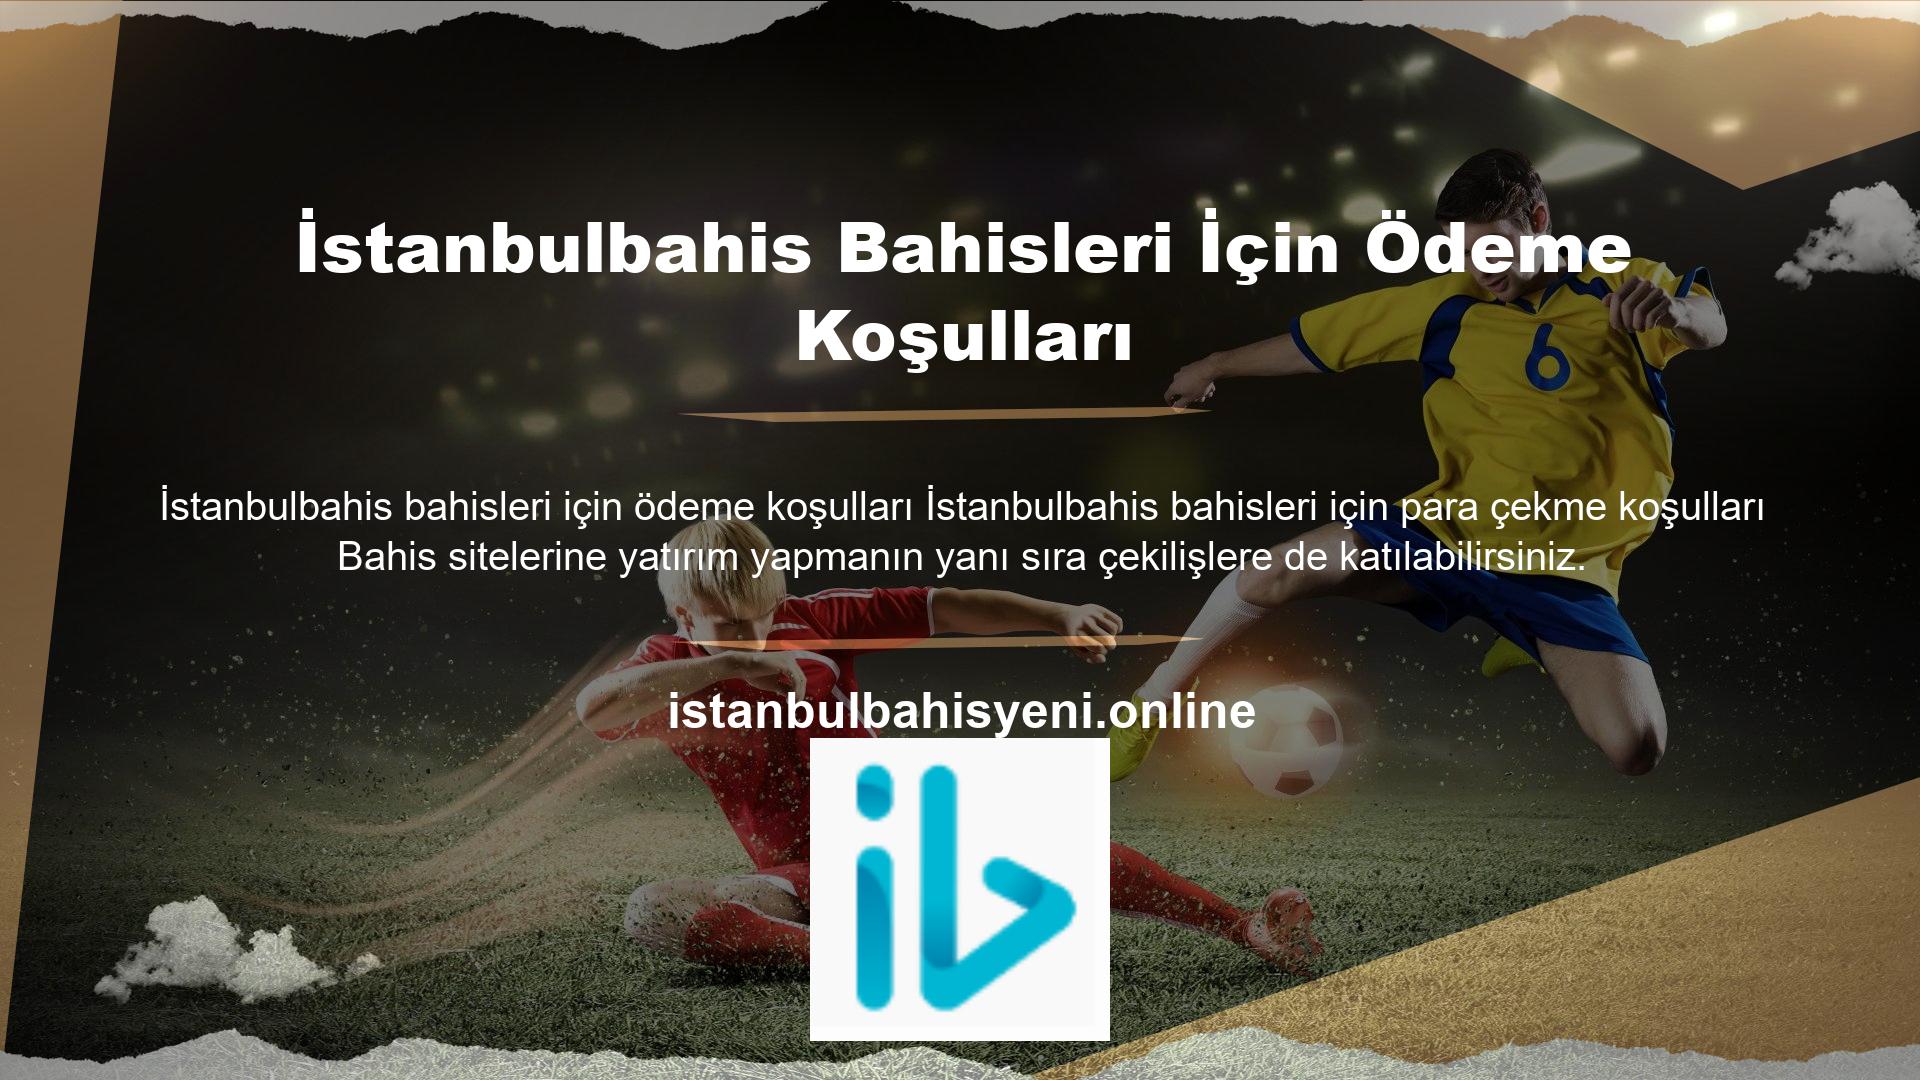 Online casino siteleri arasında faaliyet gösteren diğer casino sitelerinin aksine, İstanbulbahis casino sitesi kazançları kazanca çevirmektedir